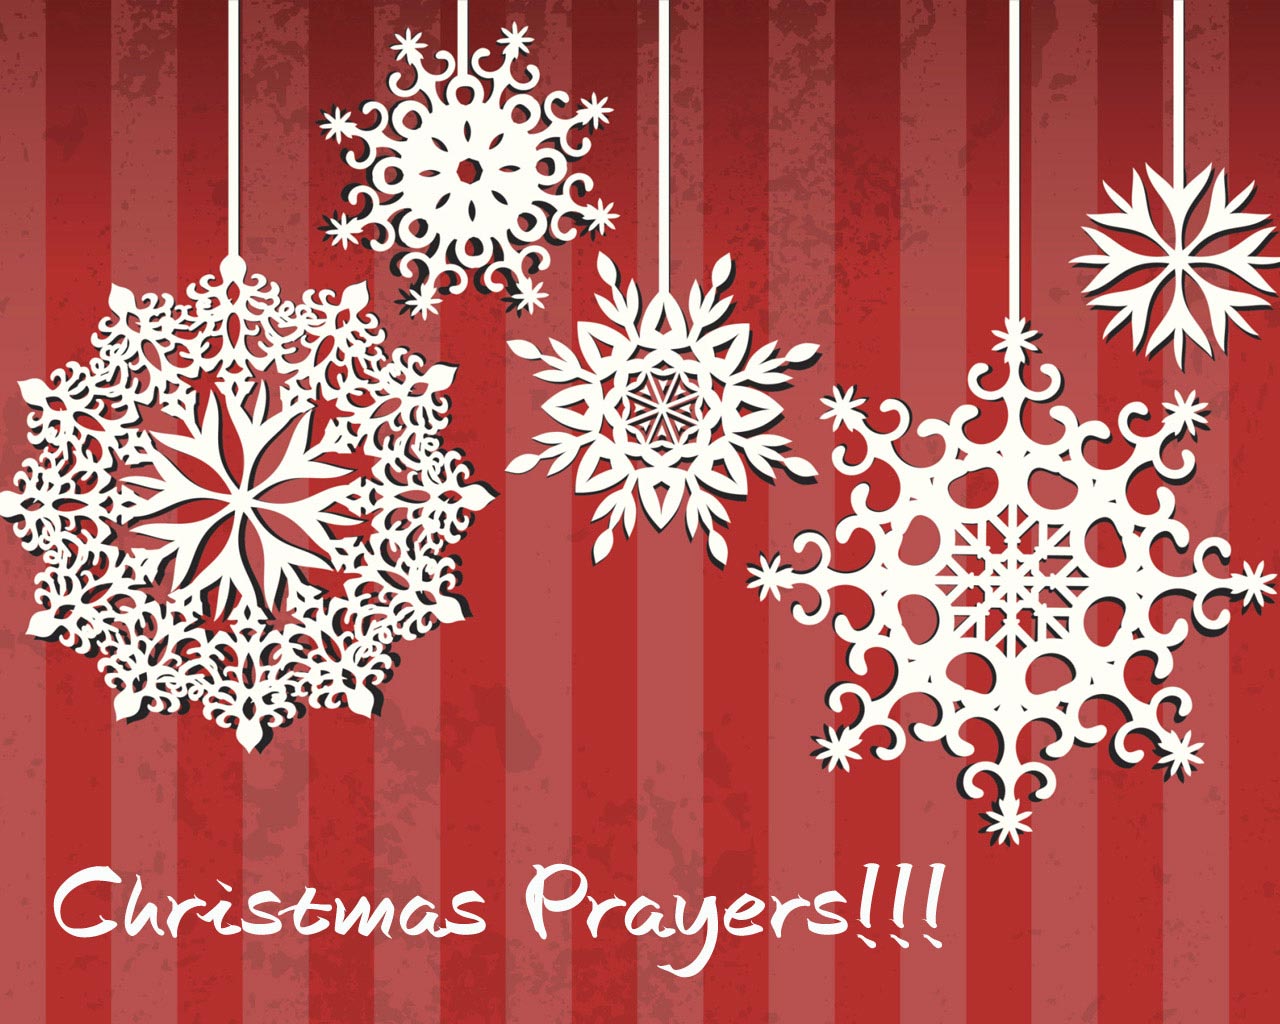 Christmas Prayers!!!